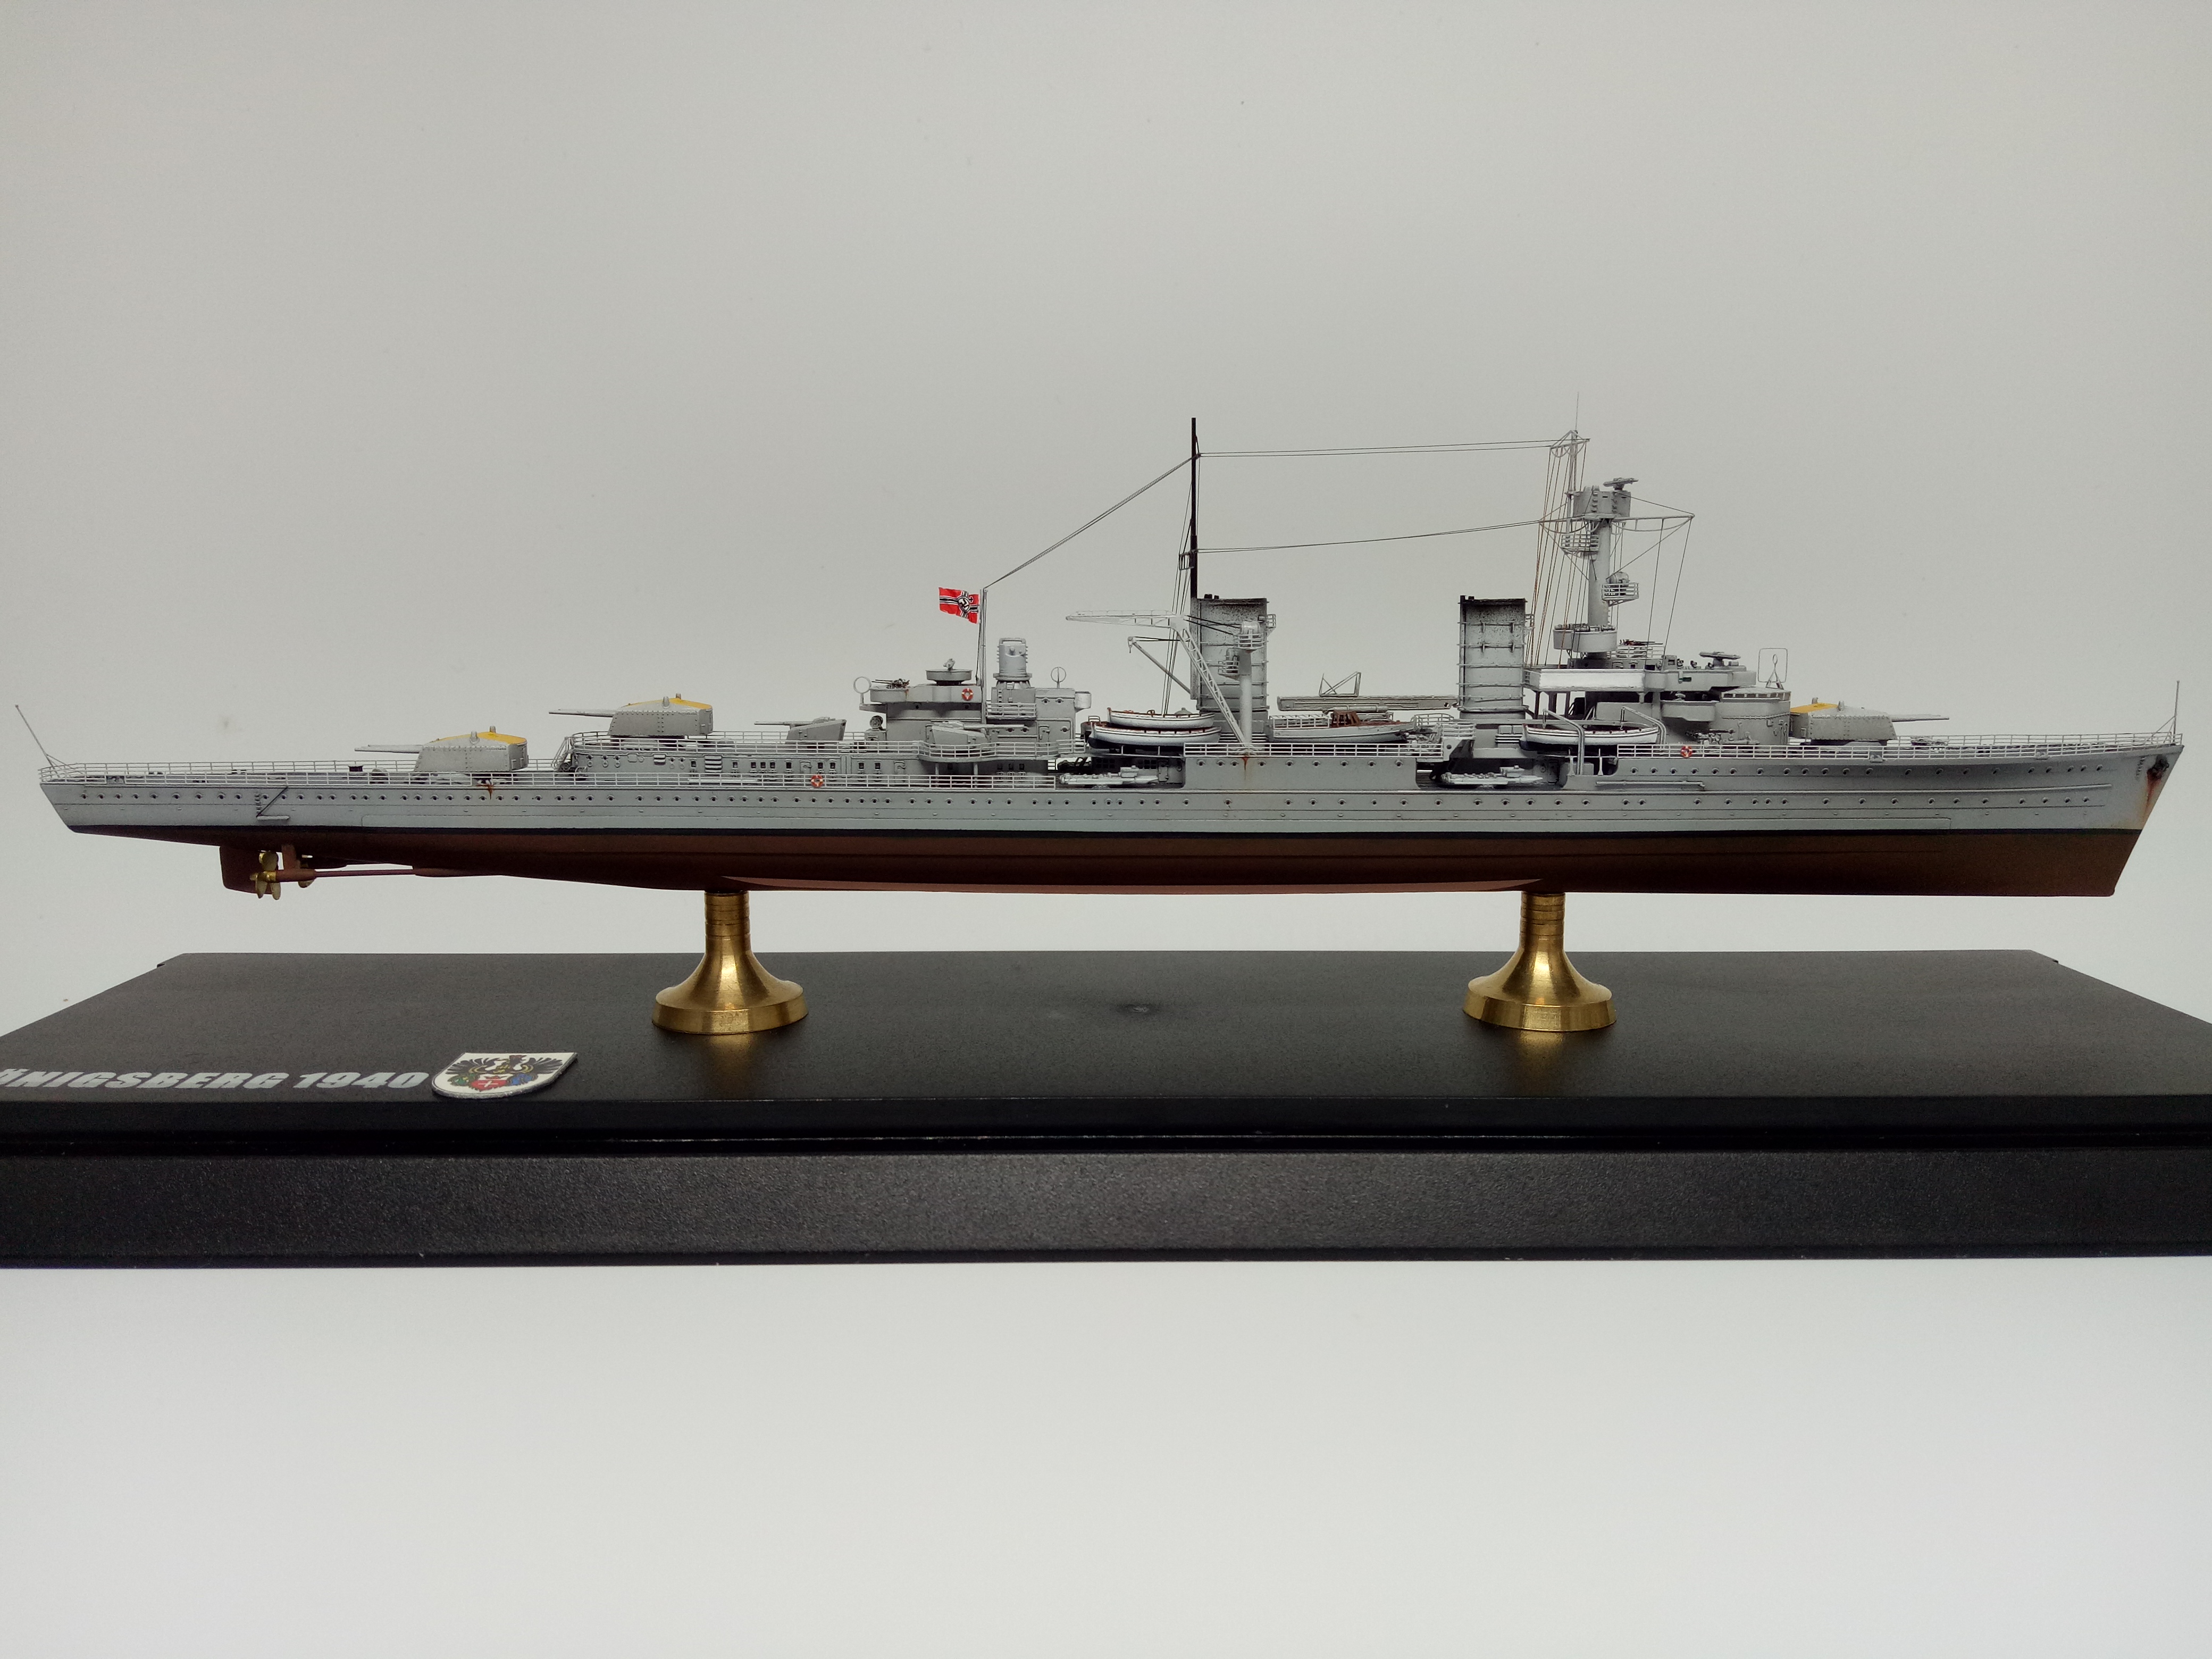 摄影比赛】模型组参赛作品12号:1:700德国海军柯尼斯堡号轻巡洋舰1940